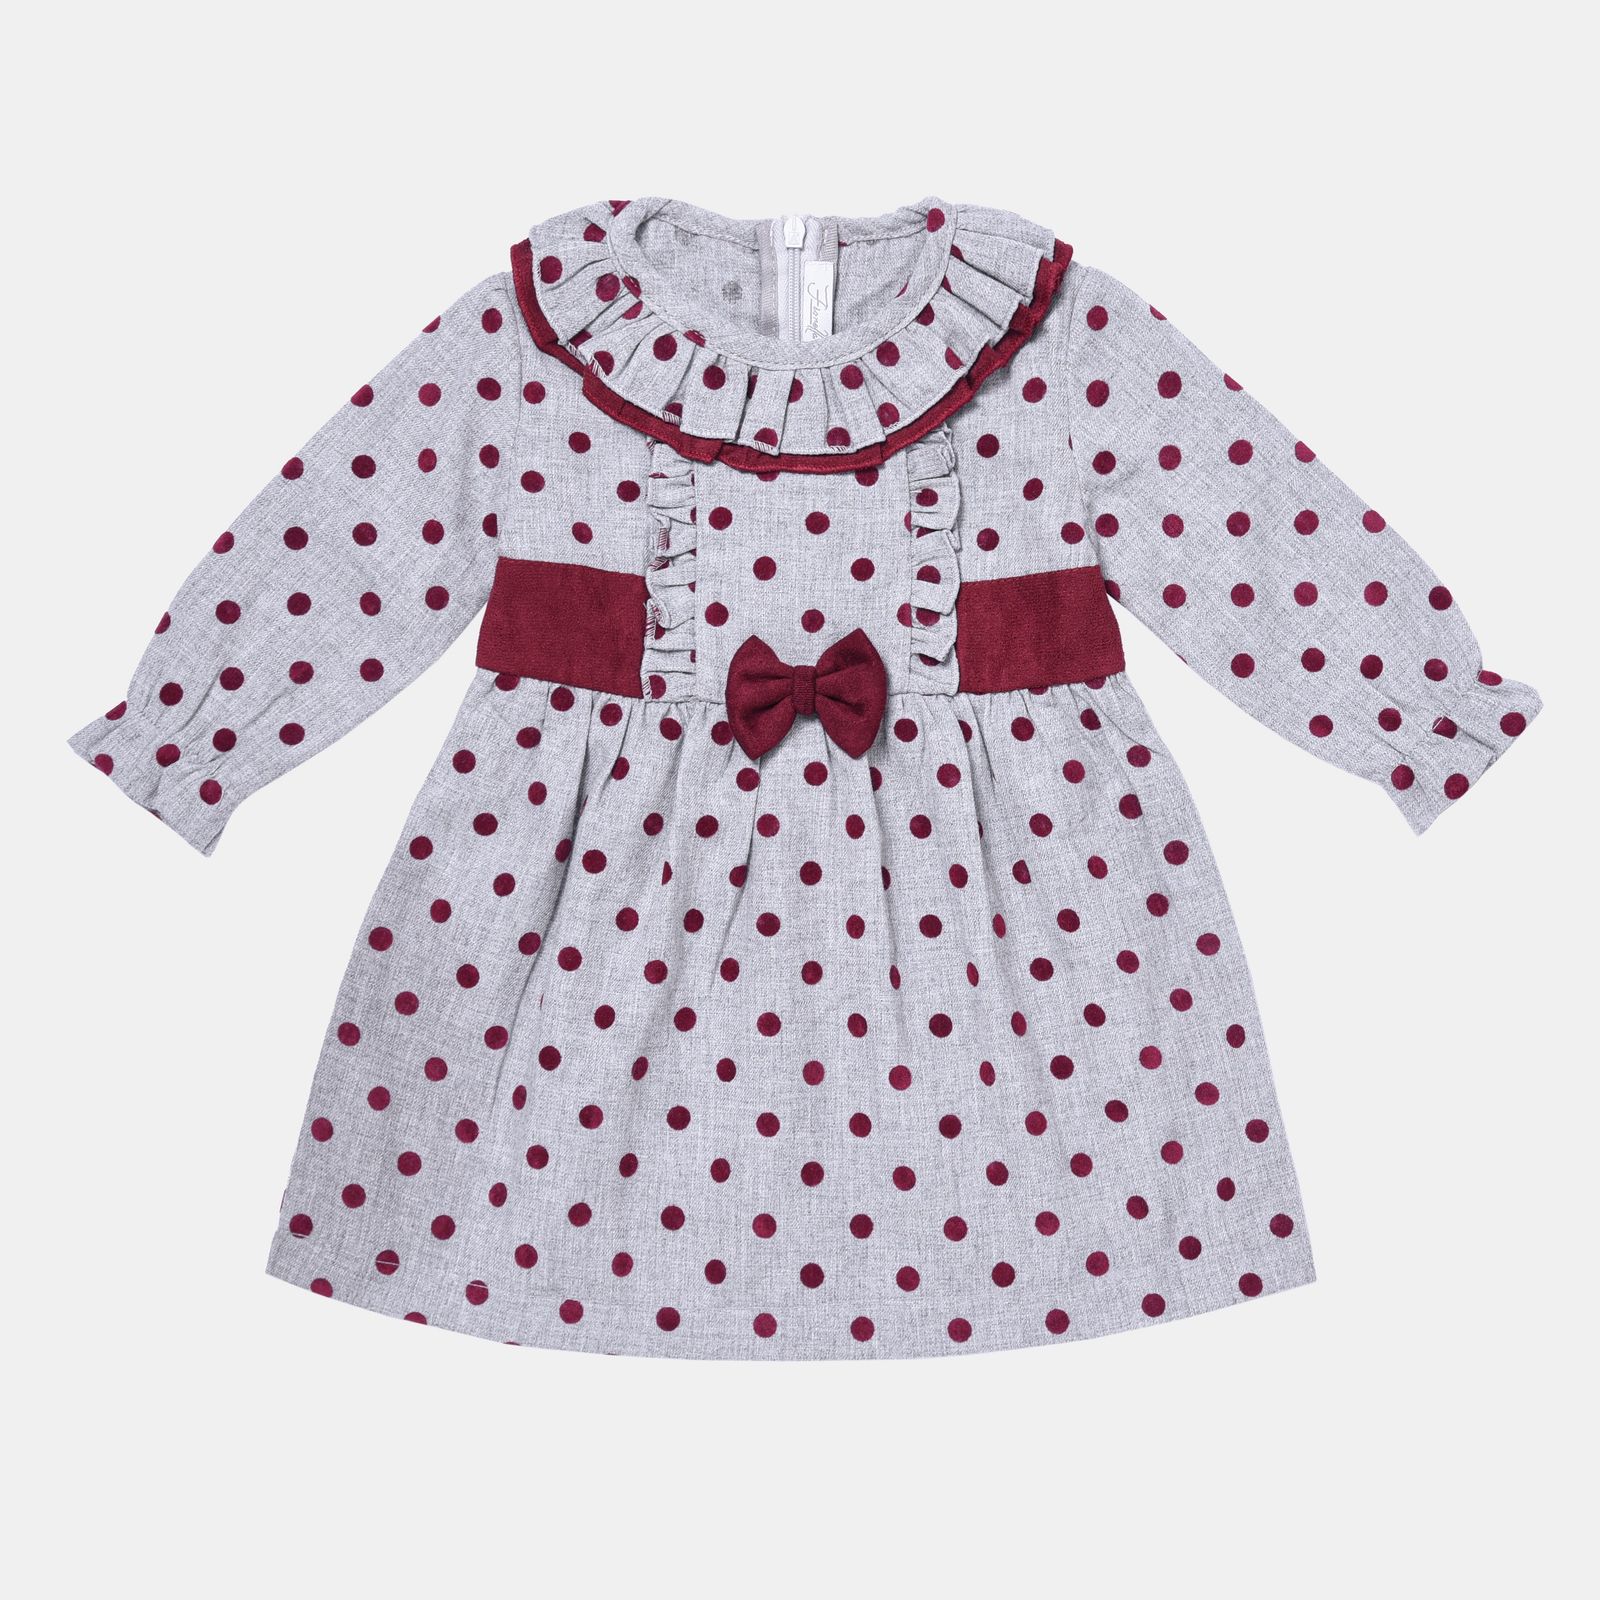 پیراهن نوزادی فیورلا مدل هانا 1 کد 21521 -  - 1